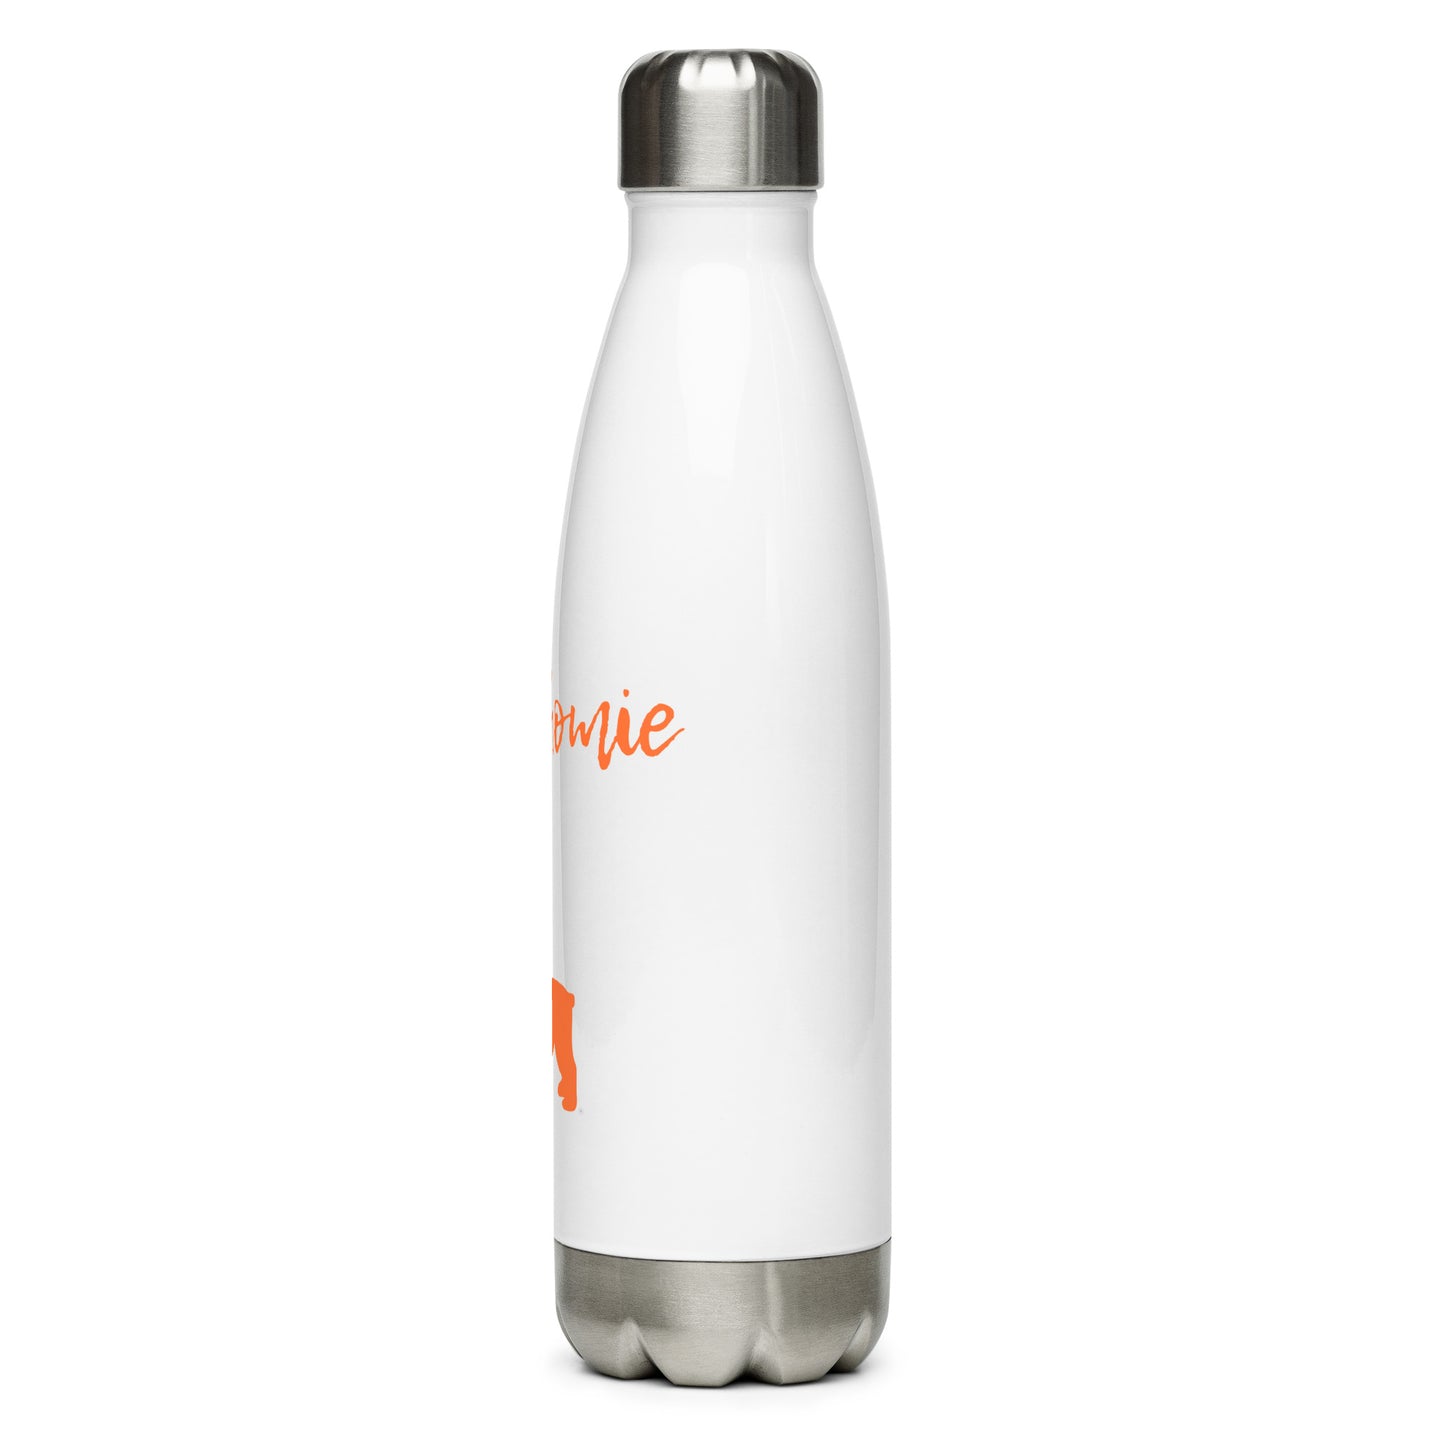 NextHomie & LukeStainless Steel Water Bottle